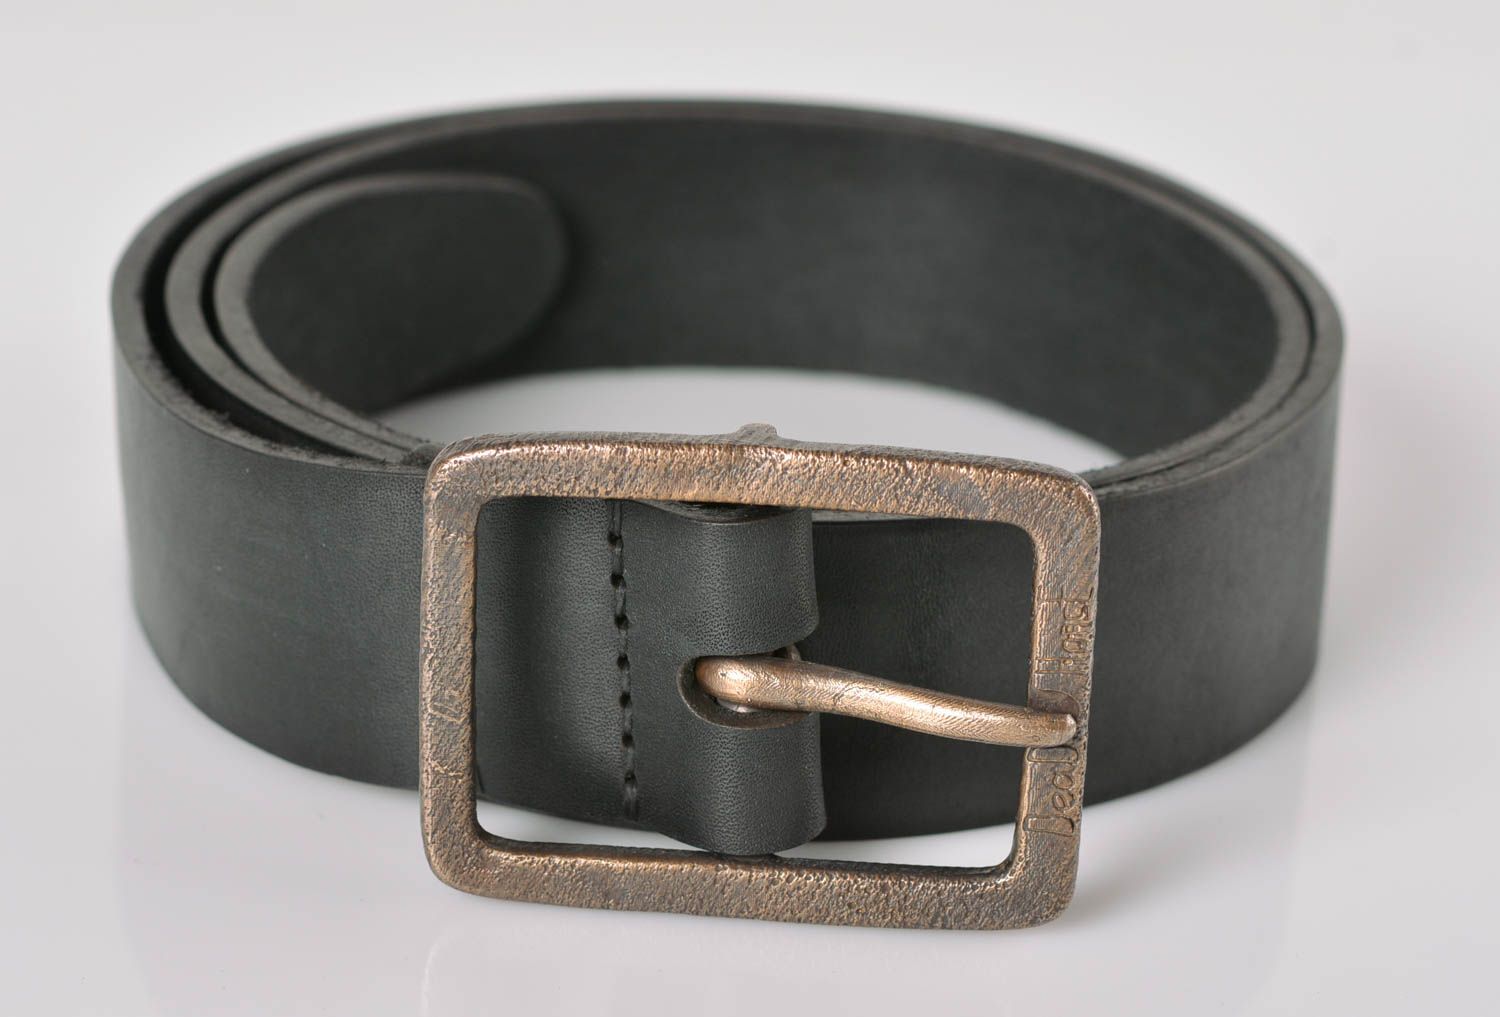 Cinturón de cuero artesanal ropa masculina estilosa original accesorio de moda foto 1